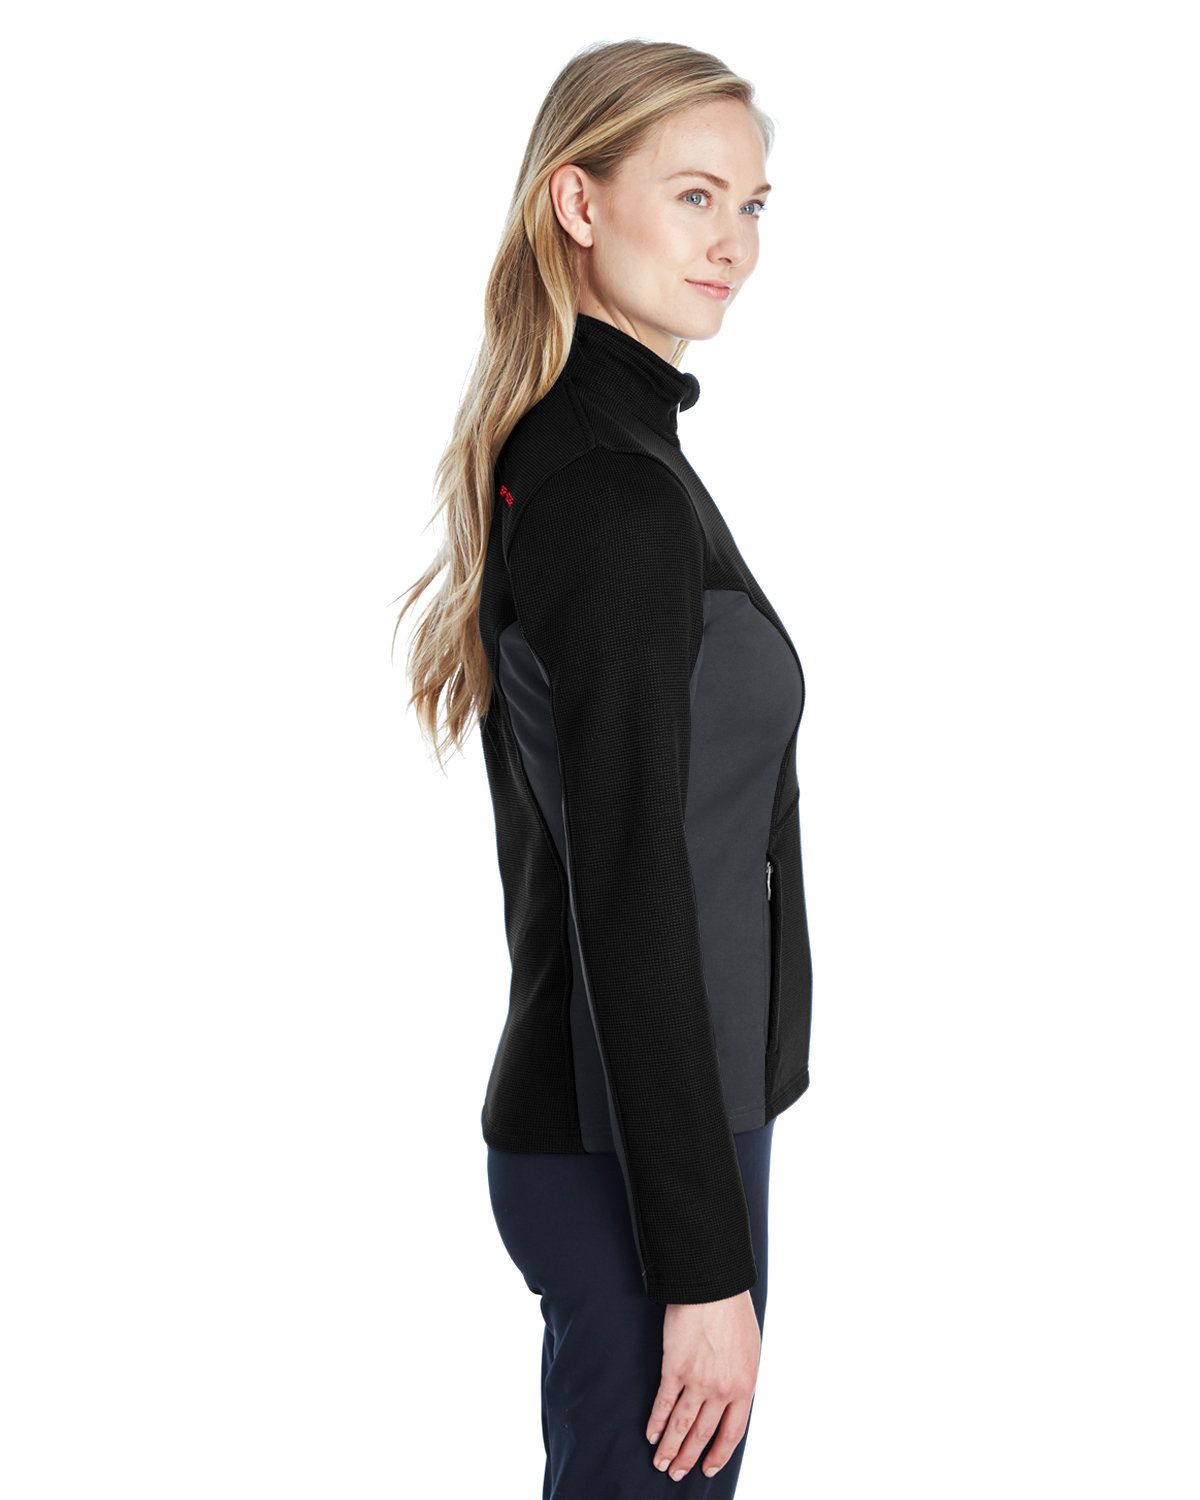 'Spyder 187335 Ladies' Constant Full Zip Sweater Fleece'